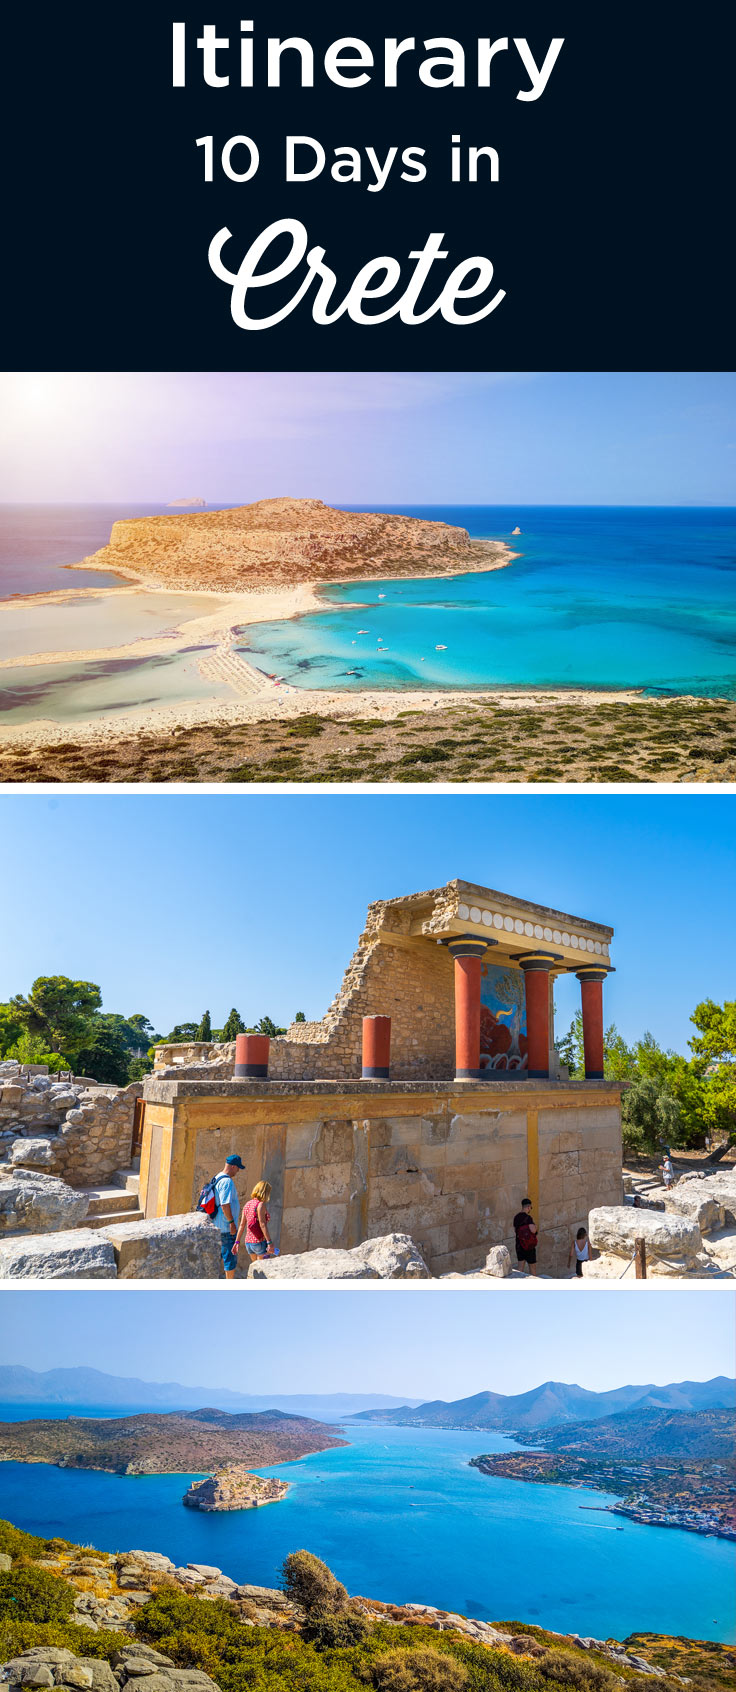 Crete itinerary 10 days